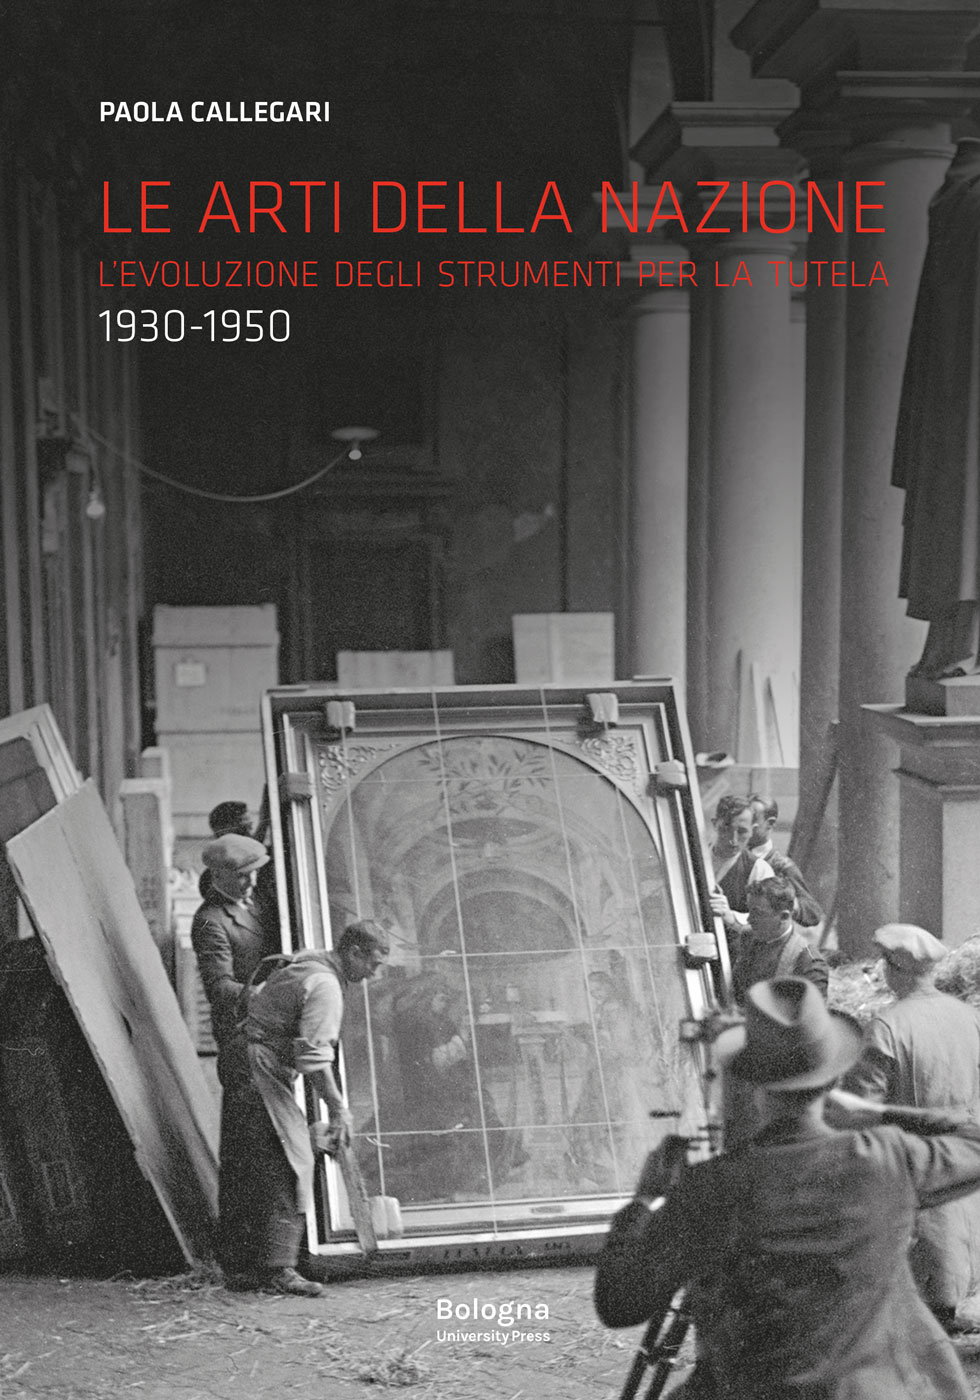 Le arti della nazione - Bologna University Press